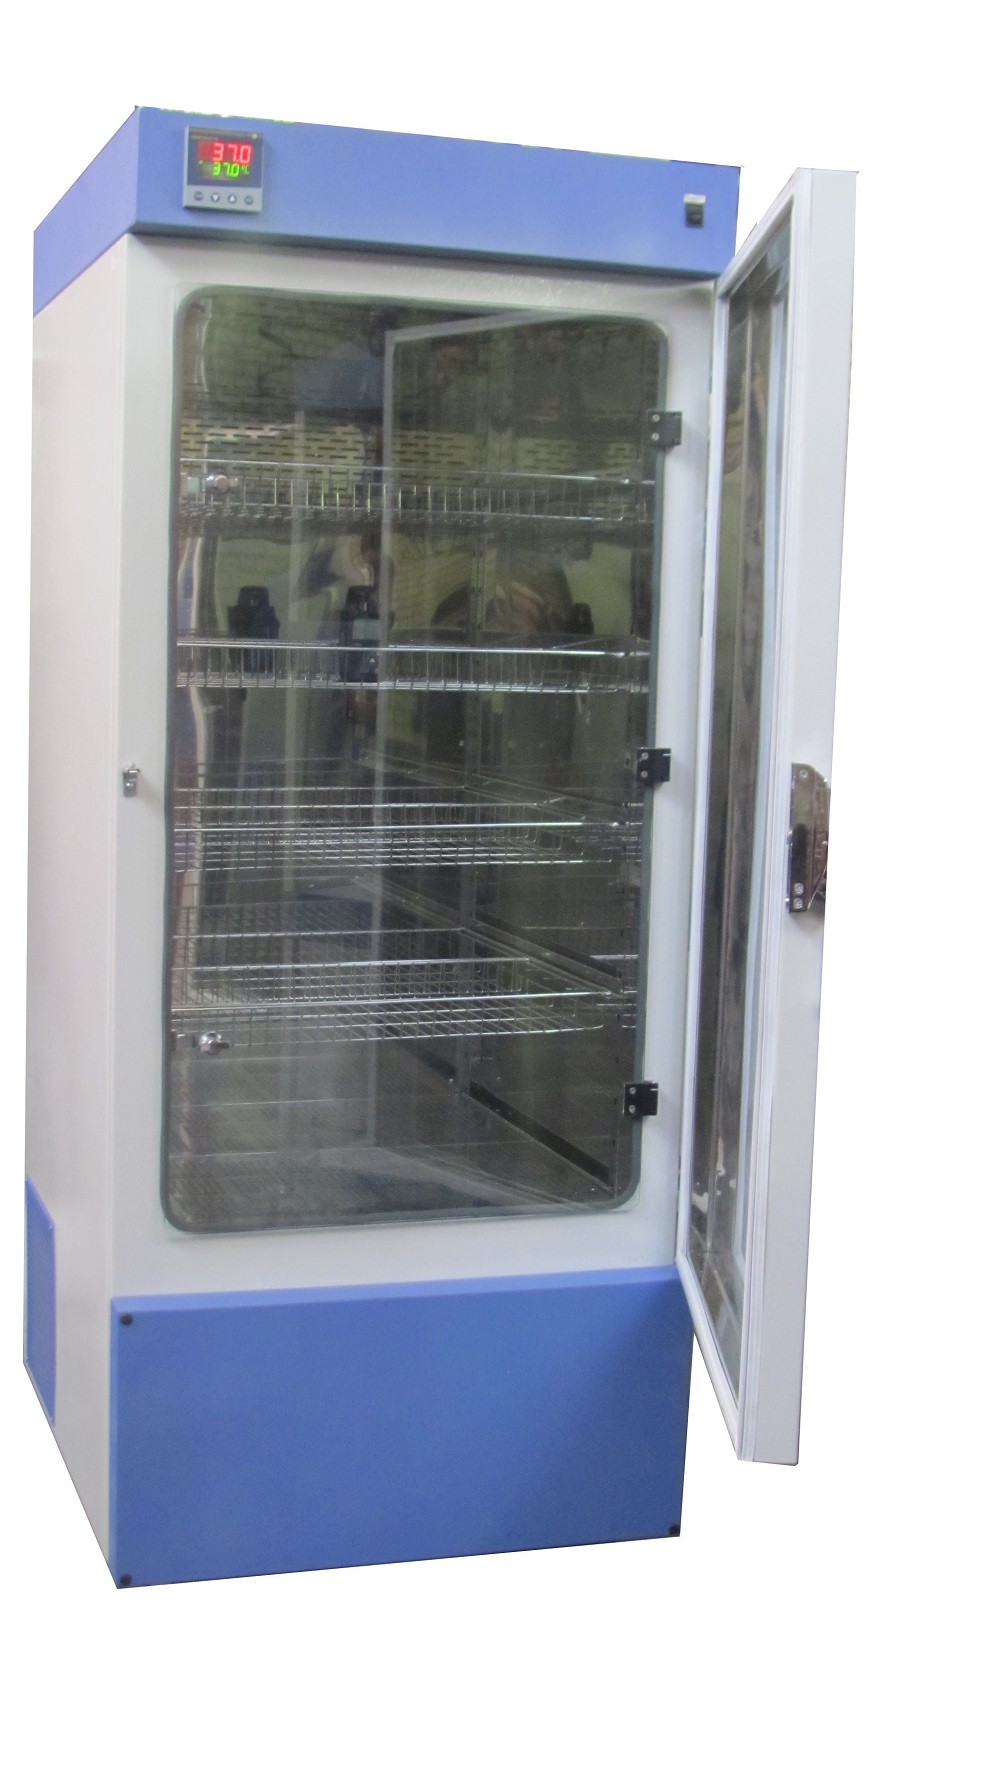 یخچال آزمایشگاهی 4 درجه  400 لیتری  مدل B